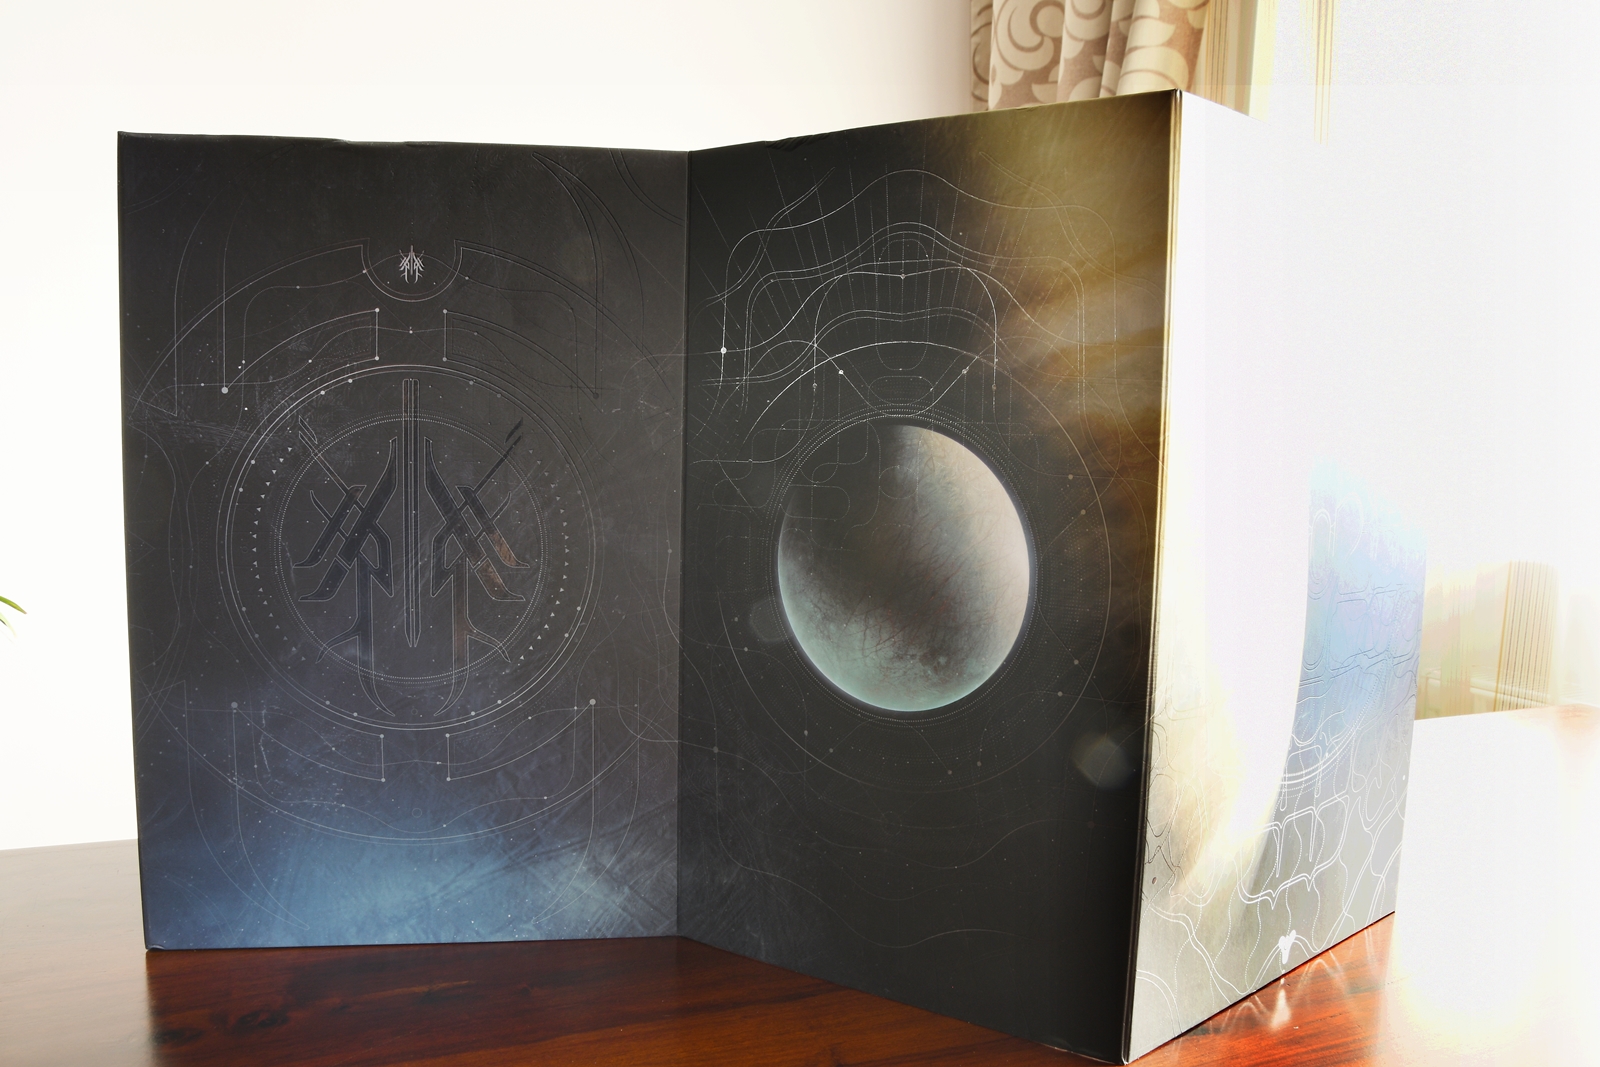 edycje kolekcjonerskie soulcalibur vi i destiny 2 poza światłem